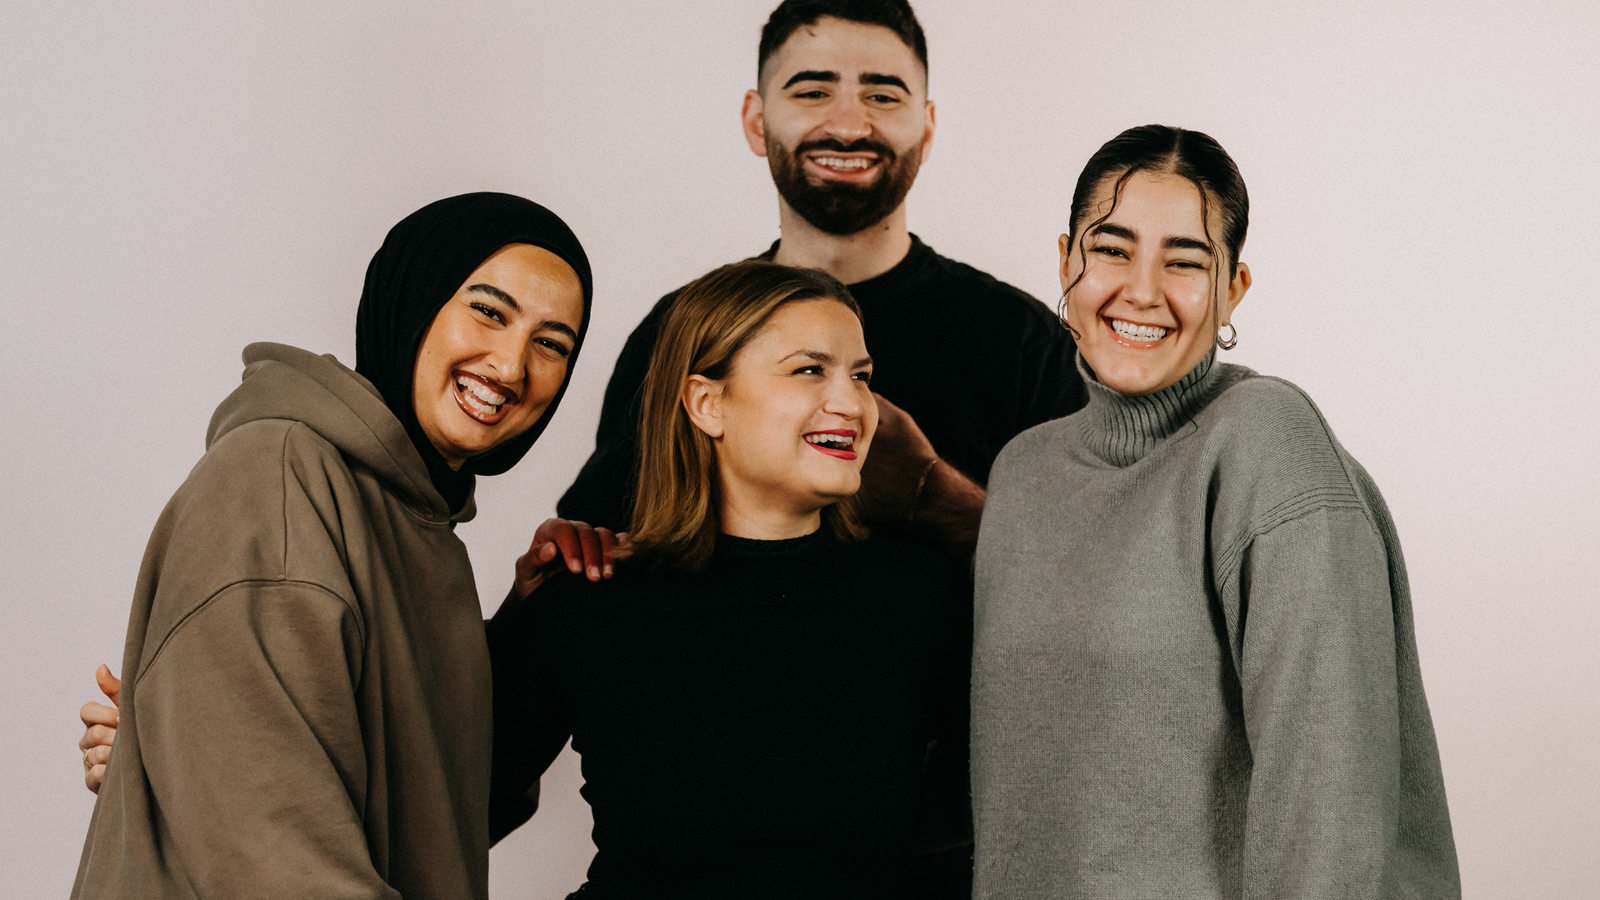 Vier junge Menschen posieren für ein Foto und lachen